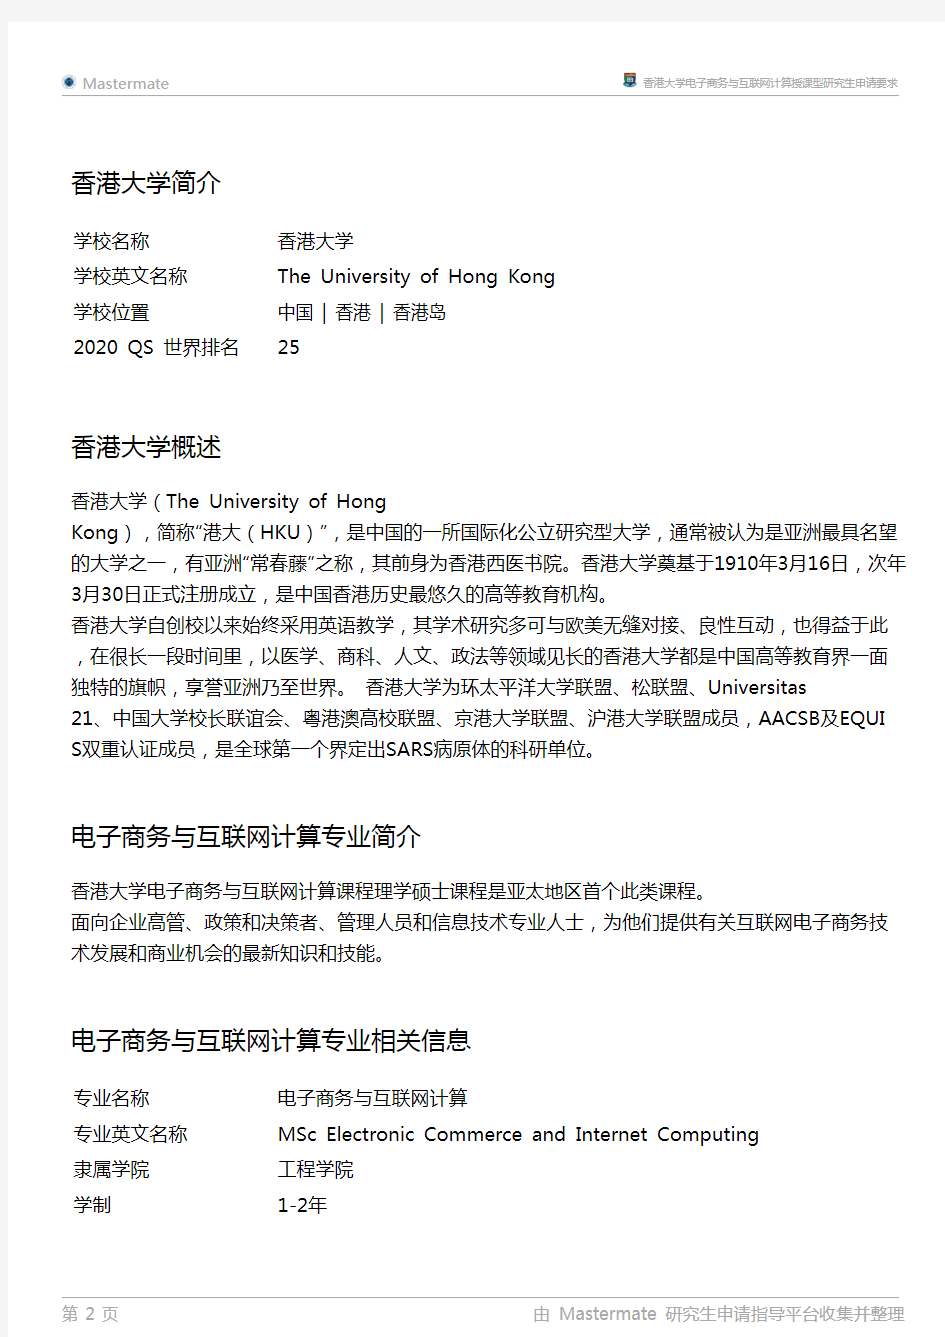 香港大学电子商务与互联网计算授课型研究生申请要求